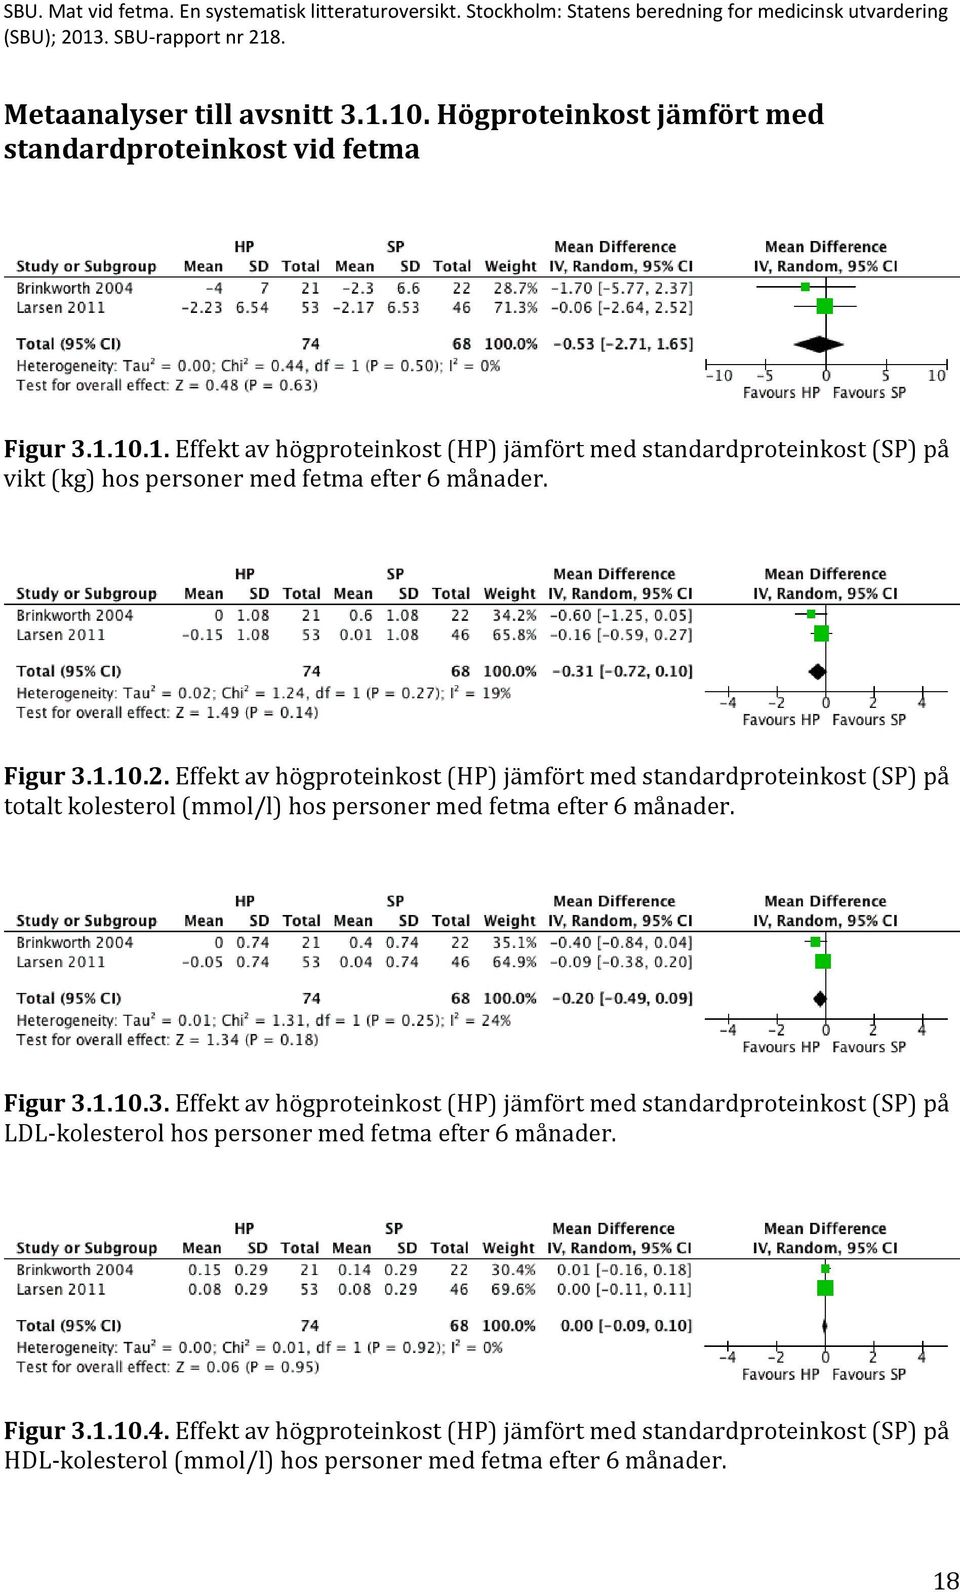 Figur 3.1.10.4. Effekt av högproteinkost (HP) jämfört med standardproteinkost (SP) på HDL-kolesterol (mmol/l) hos personer med fetma efter 6 månader. 18